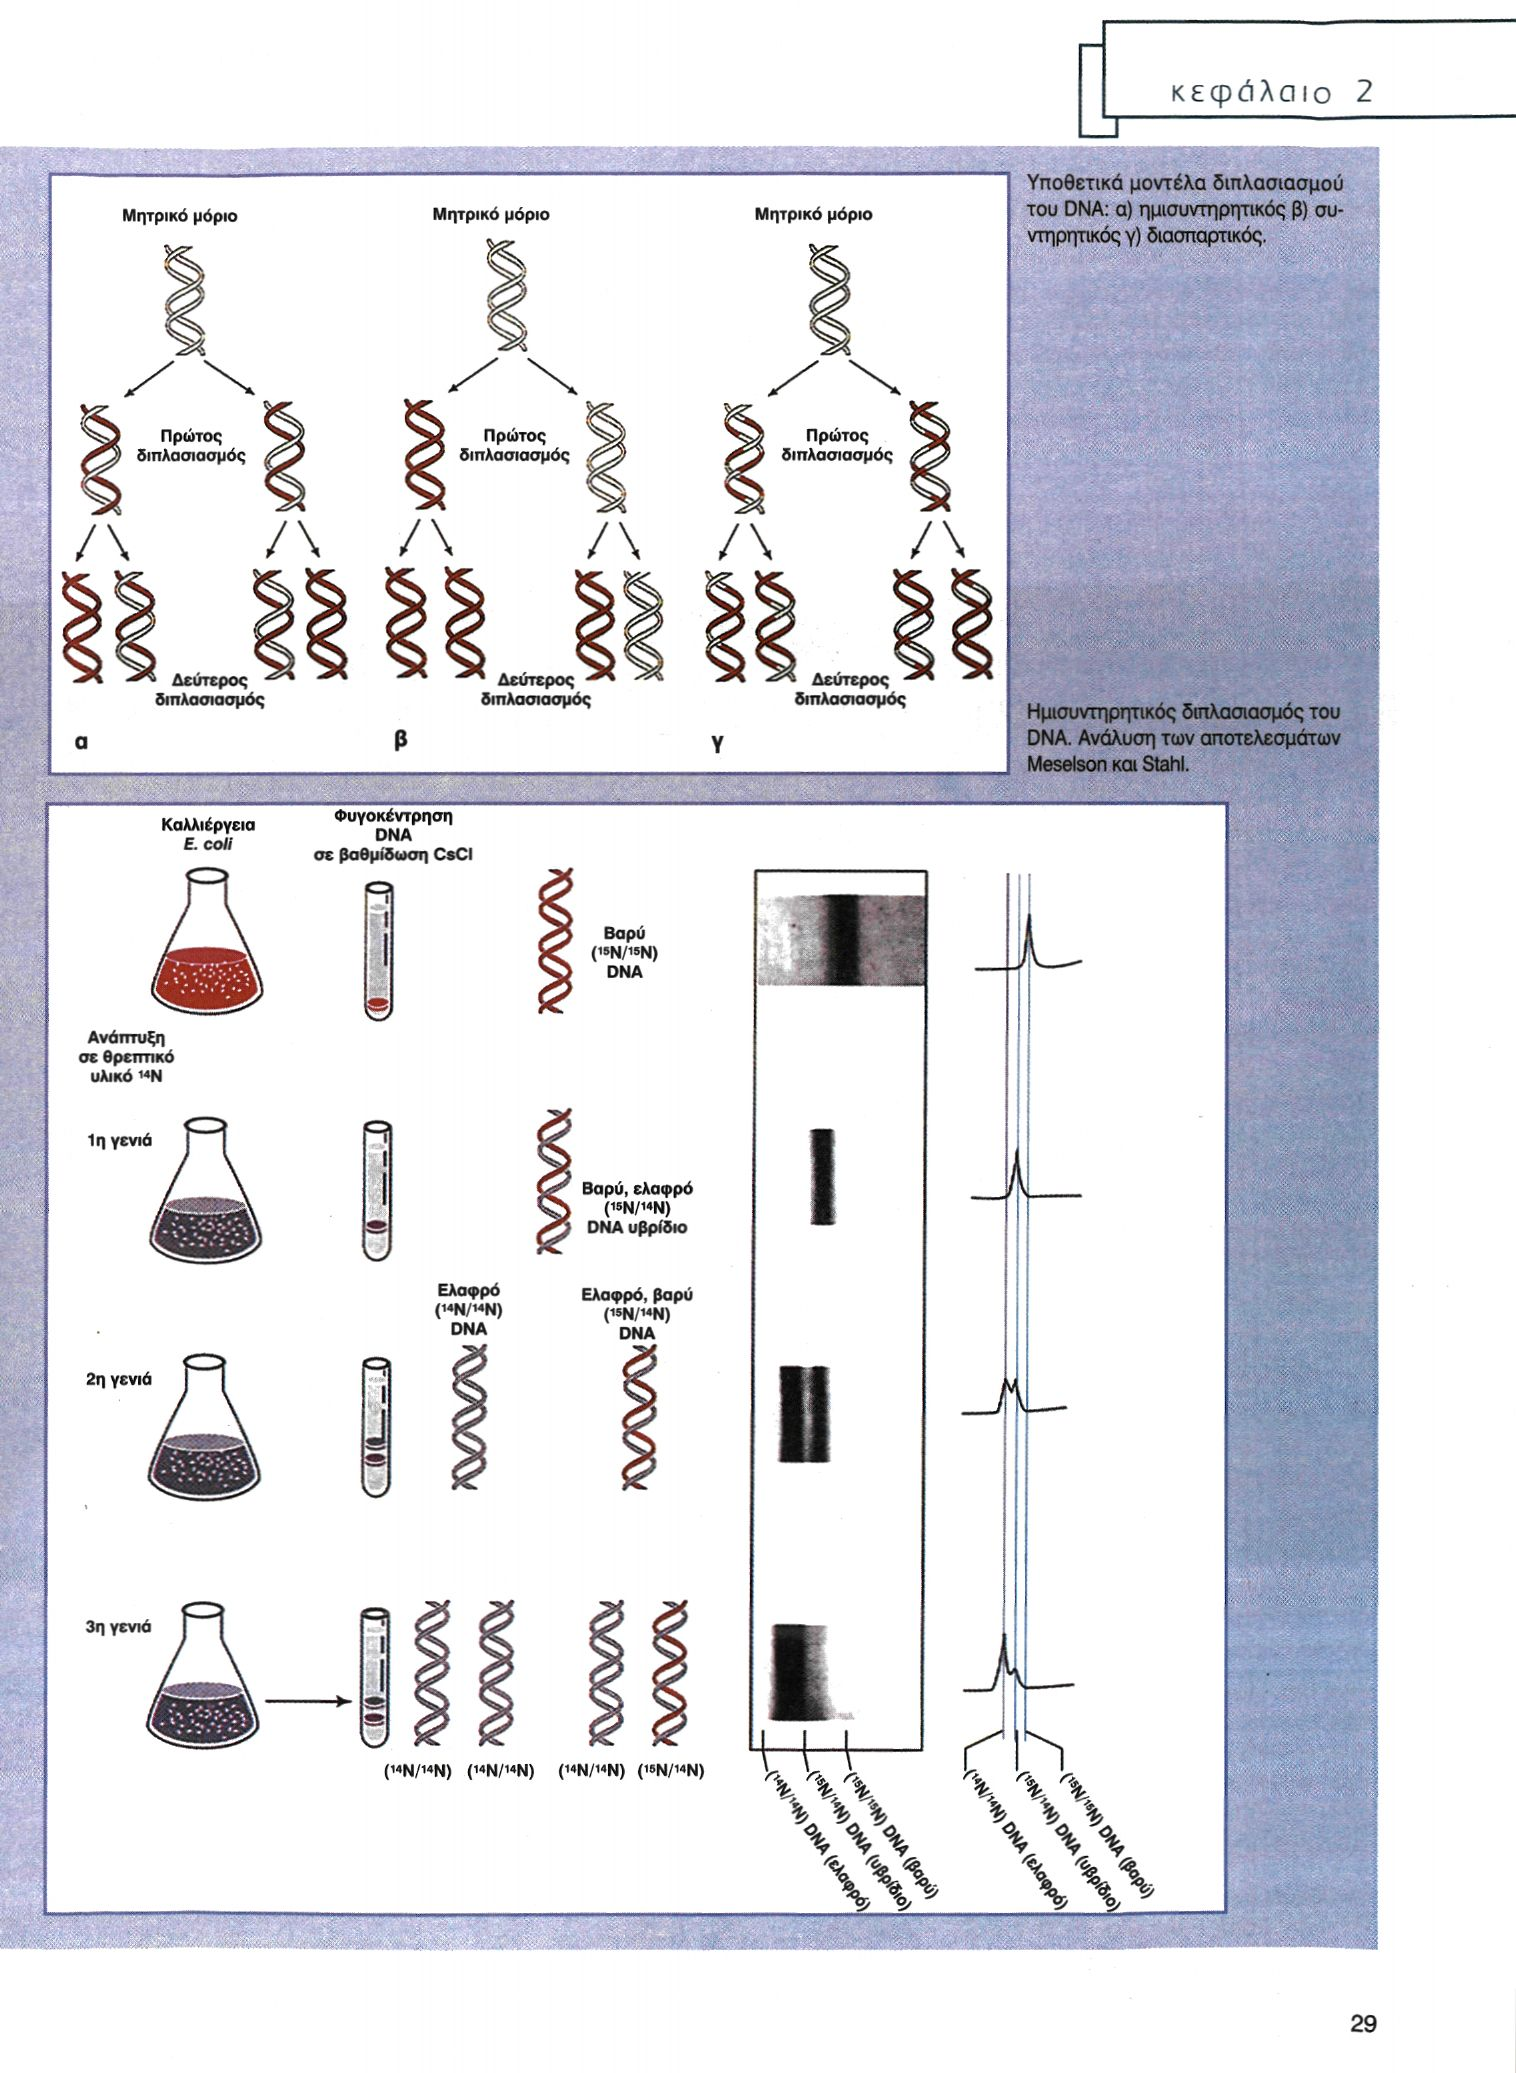 Υποθετικά μοντέλα διπλασιασμού του DNA: α) ημισυντηρητικός β) συντηρητικός γ)